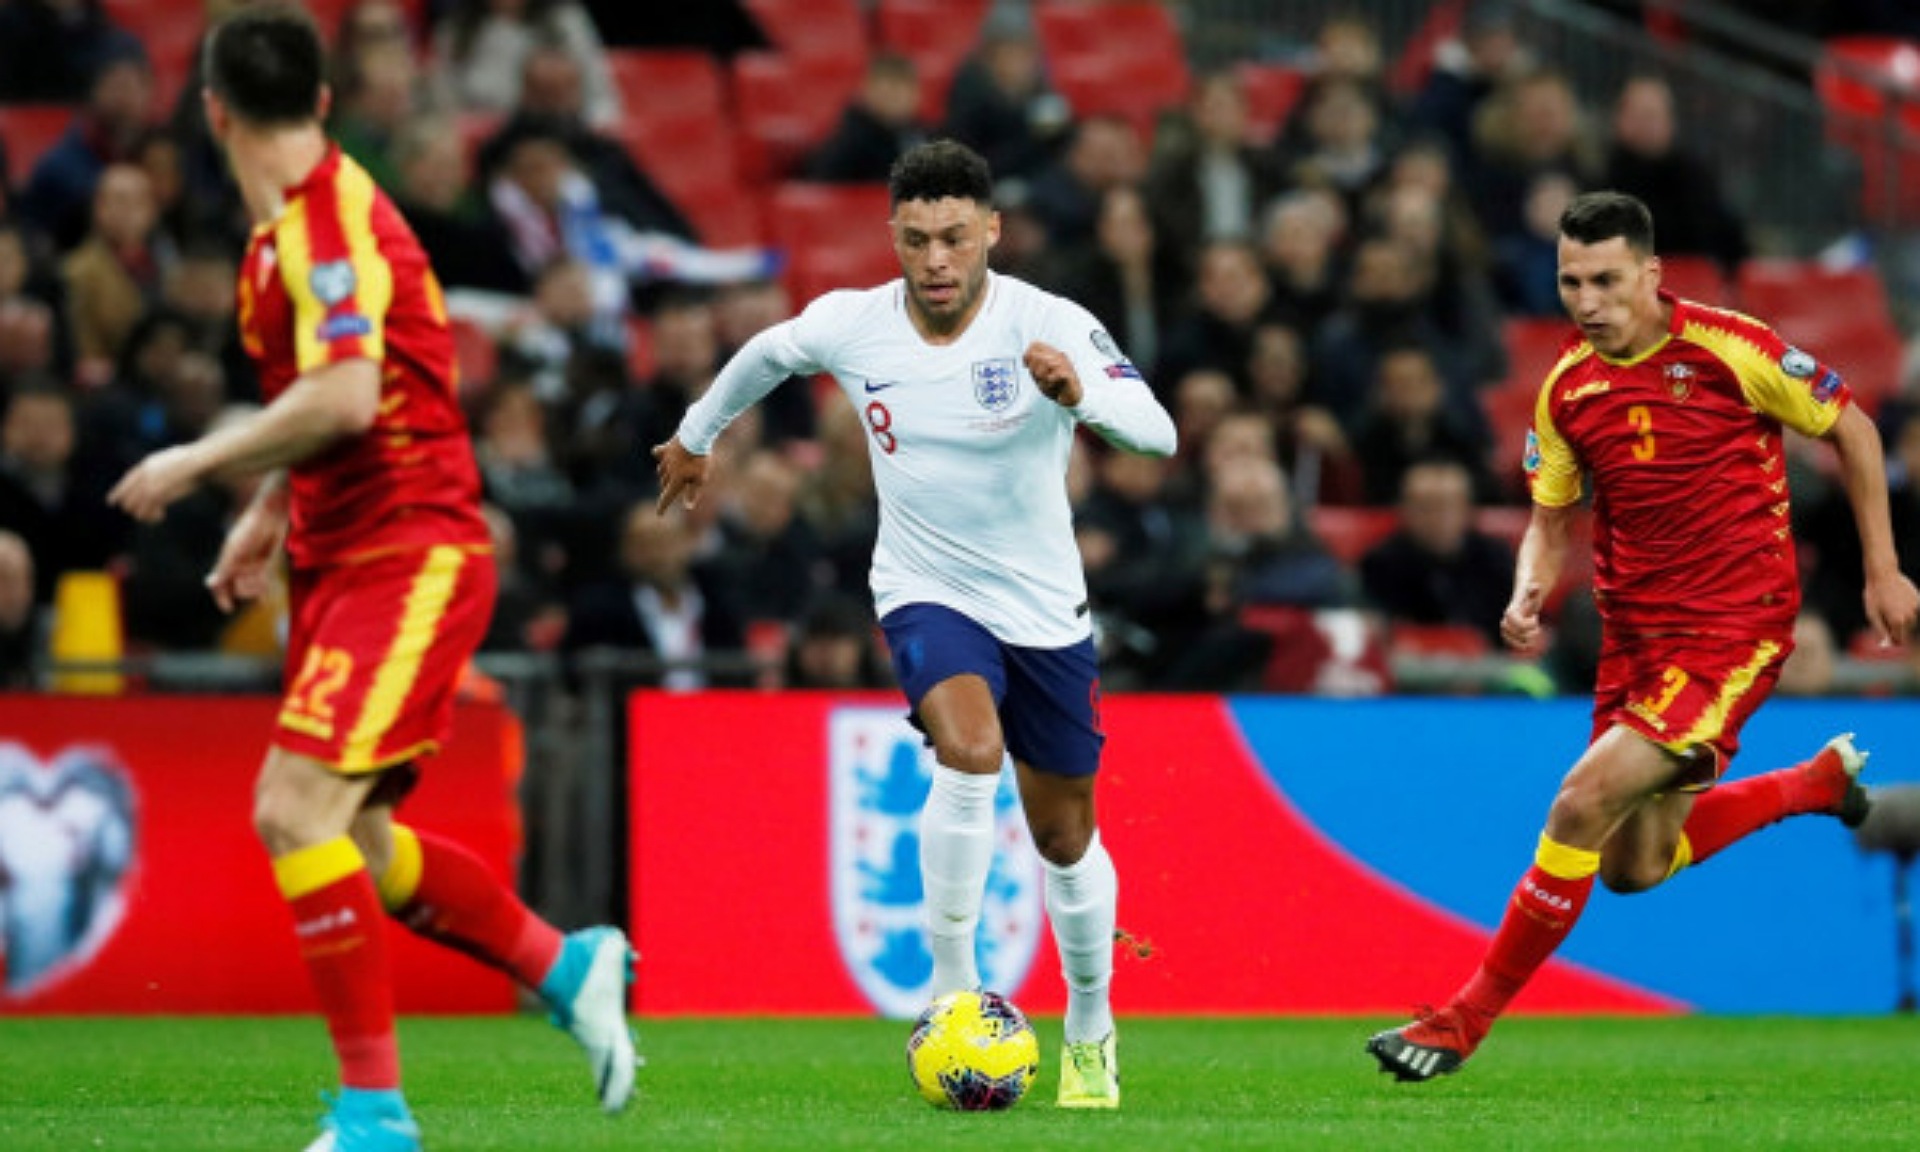 Bantai Montenegro 7-0, Inggris Lolos ke Piala Eropa 2020